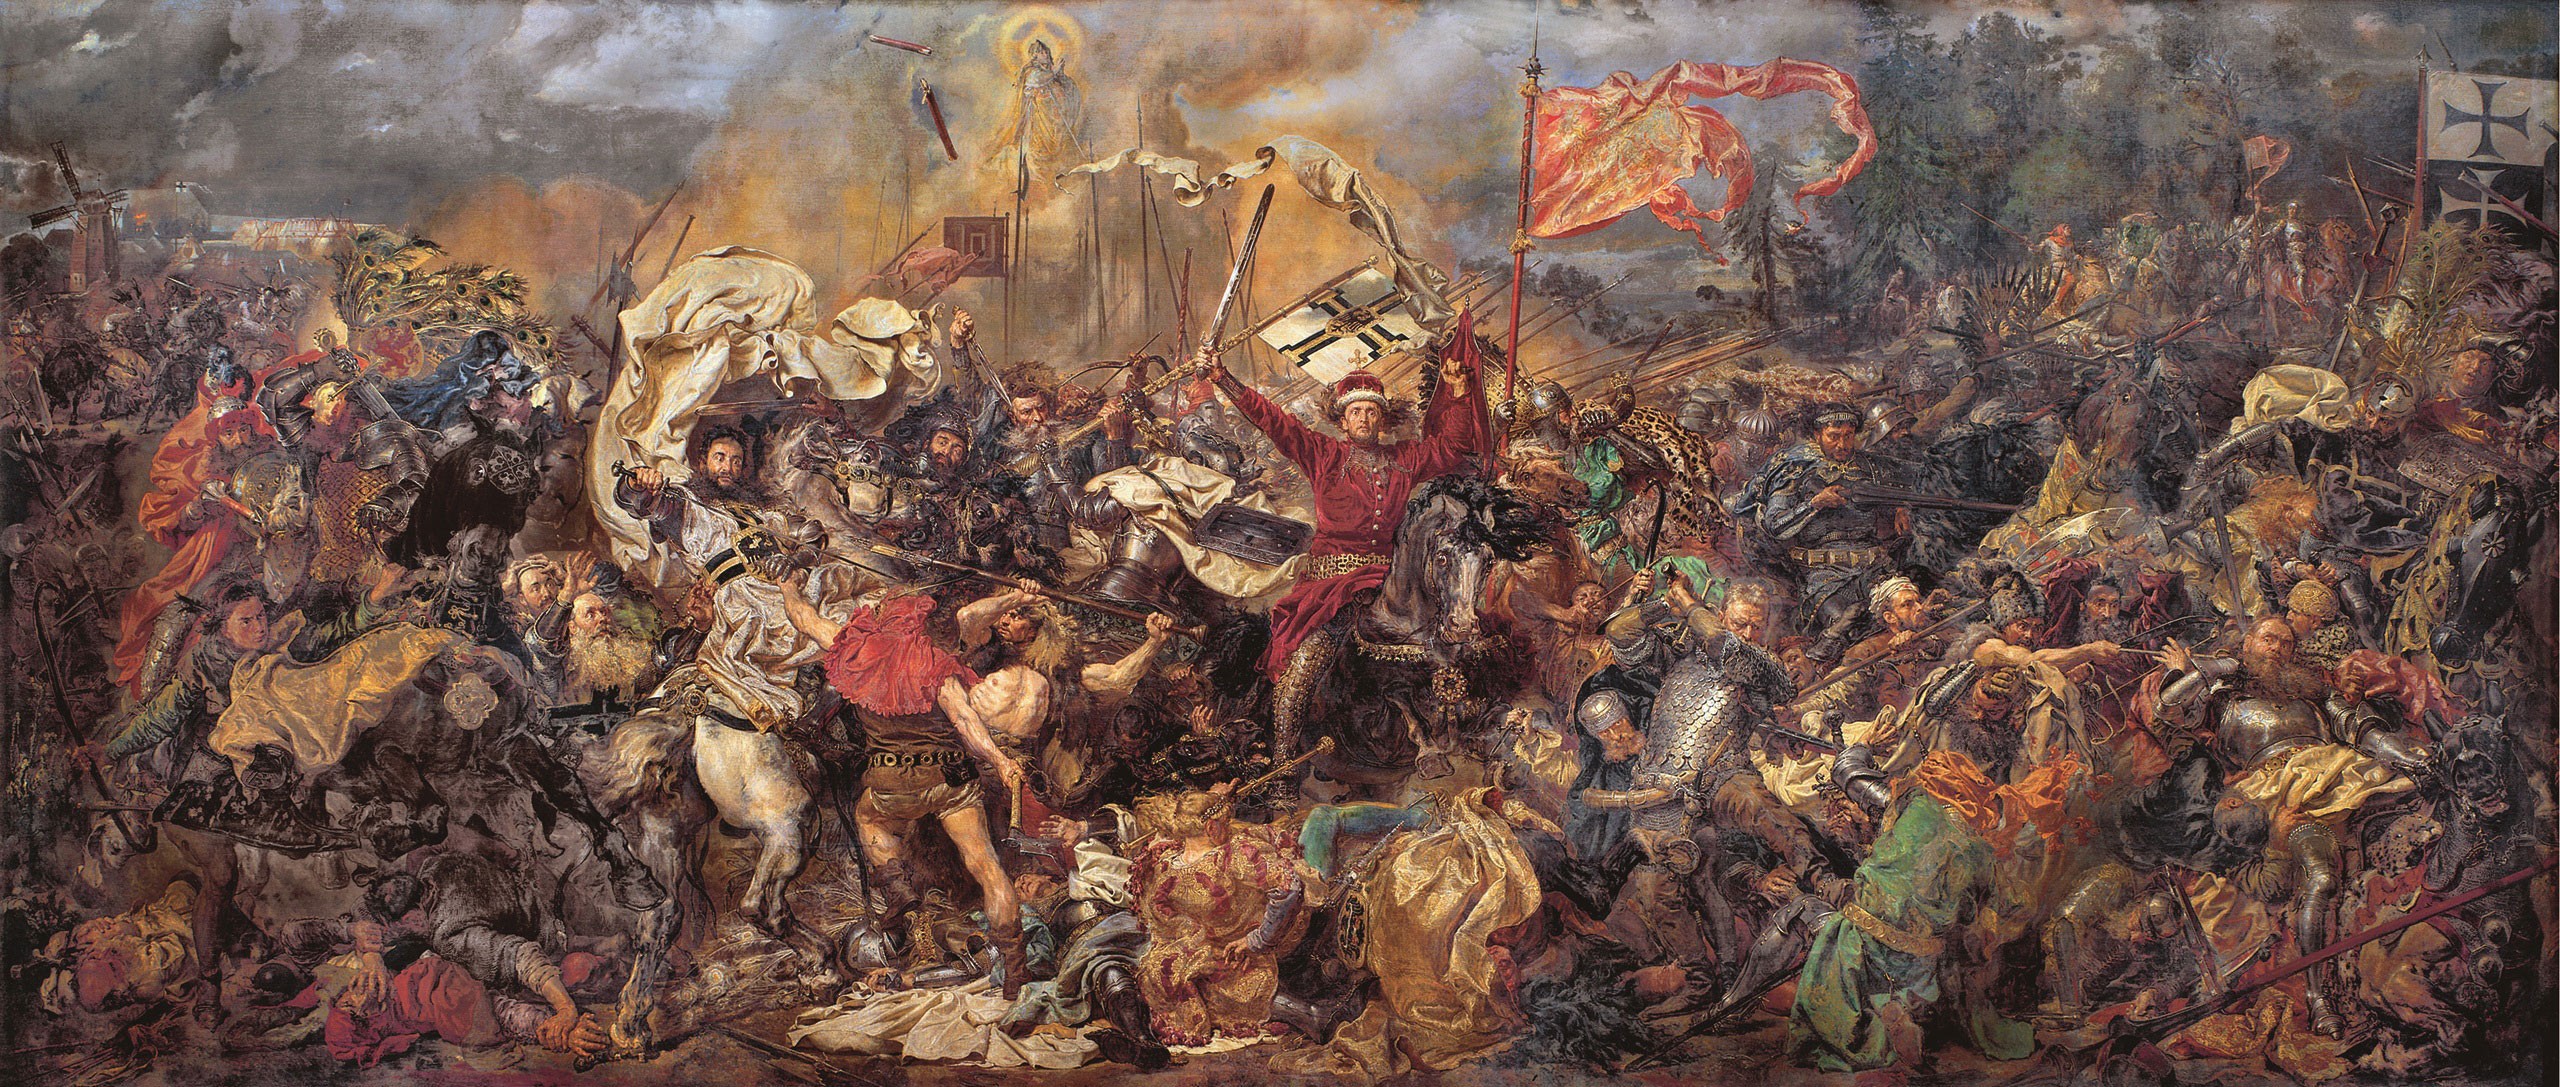 Battlefields Battle Of Grunwald Classic Art Jan Matejko Grunwald 1410 Poland Lithuania Teutonic Orde 2560x1087